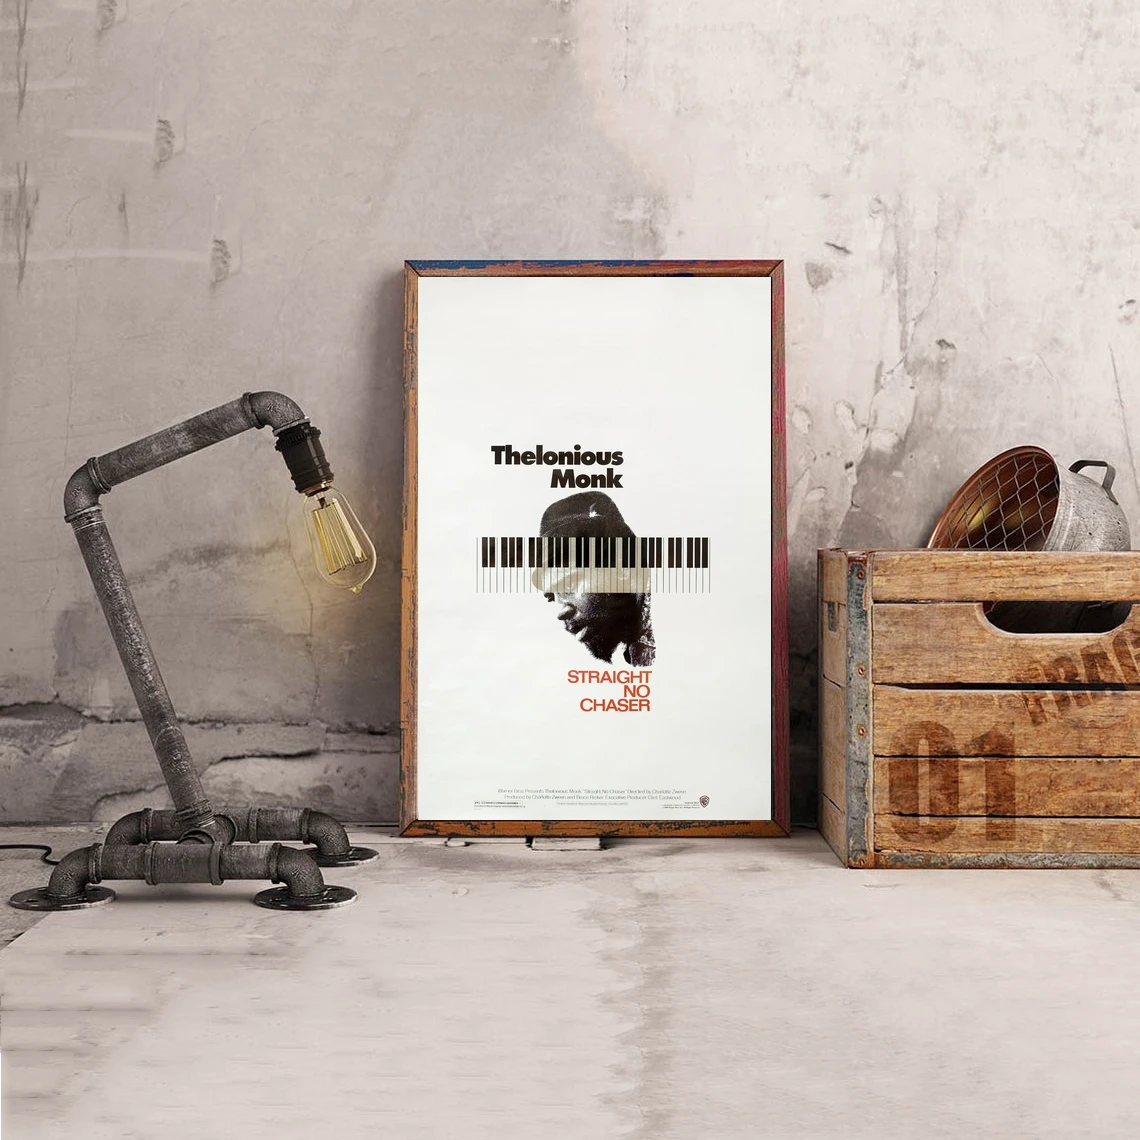 

Thelonious Monk прямой, без Chaser кинопостер, классический винтажный Ретро холст печать, художественный постер, настенная живопись, украшение для дома